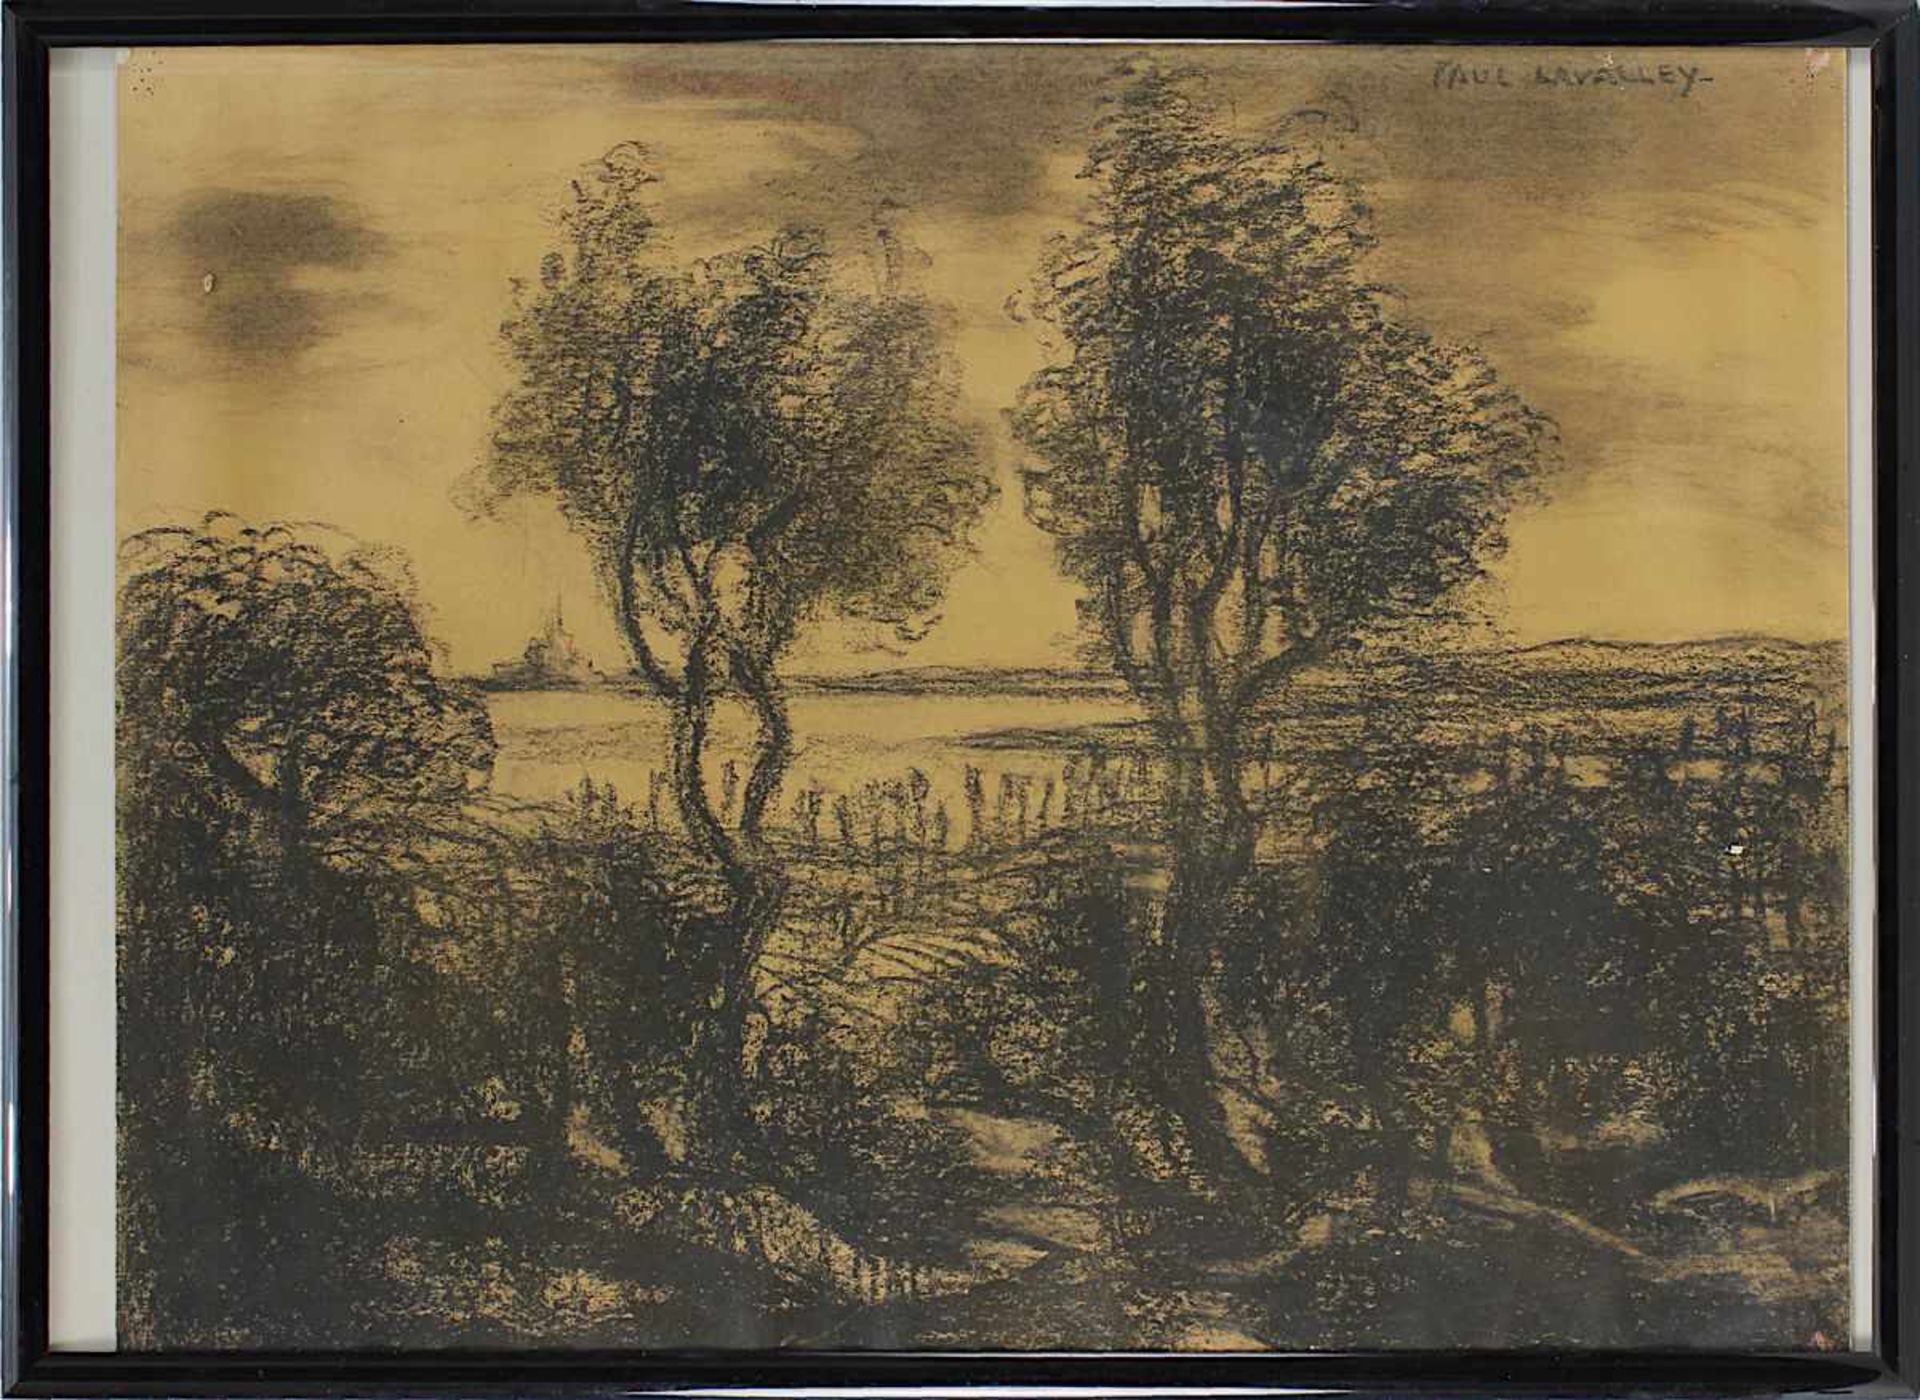 Lavalley, Paul (1883 - 1967), Landschaft, Kohlezeichnung, rechts oben signiert, an den Ecken